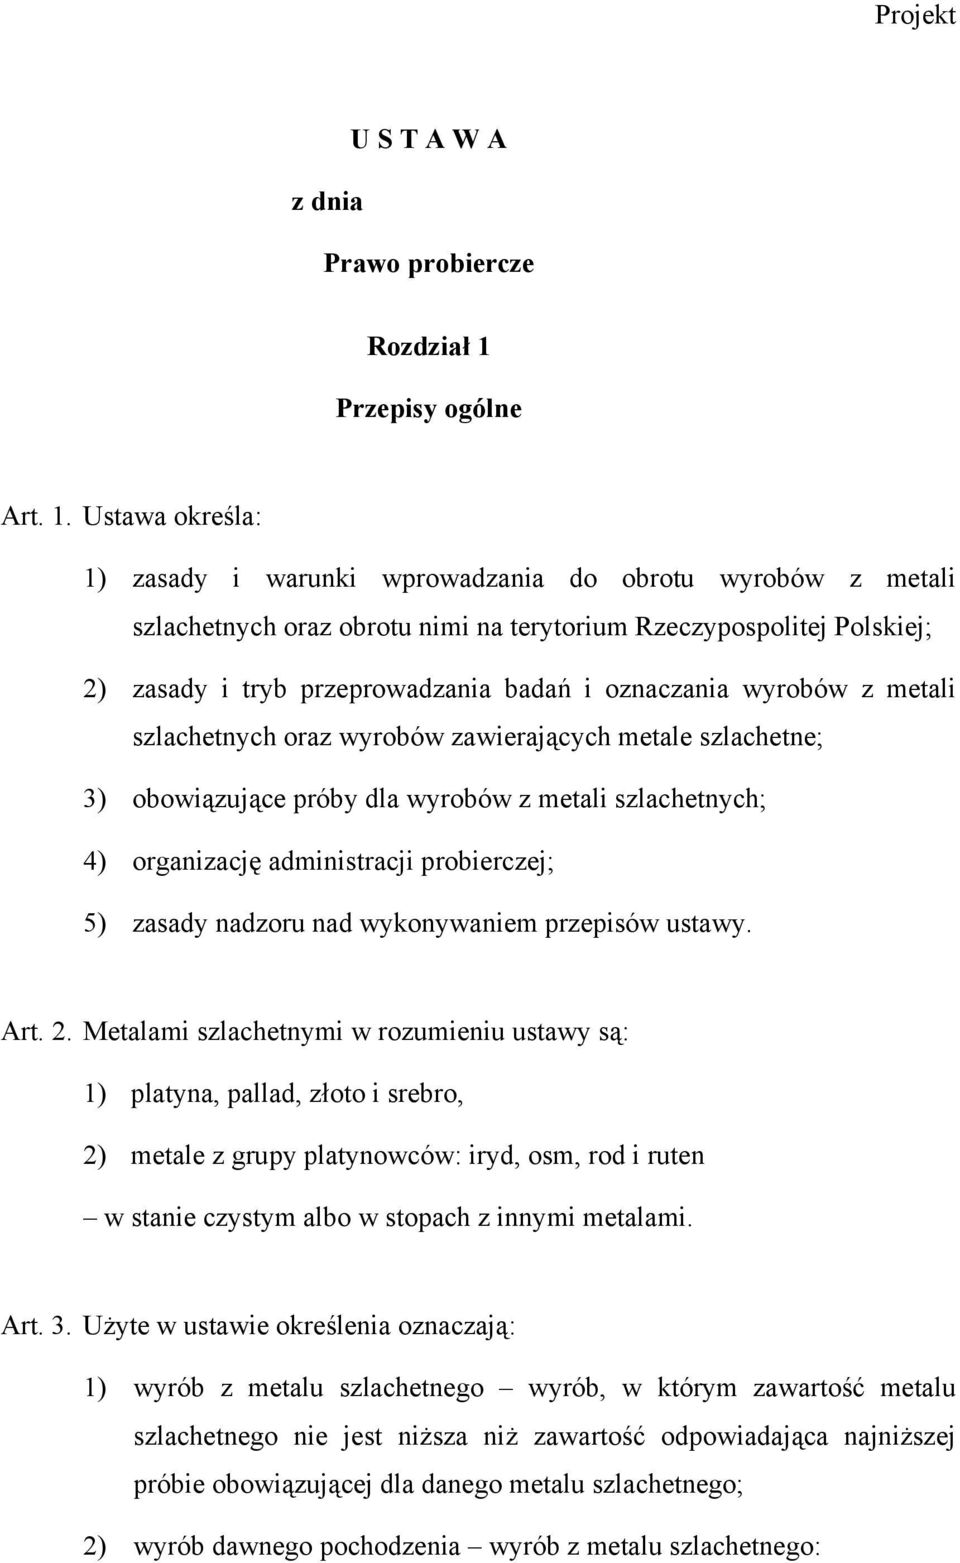 Ustawa określa: 1) zasady i warunki wprowadzania do obrotu wyrobów z metali szlachetnych oraz obrotu nimi na terytorium Rzeczypospolitej Polskiej; 2) zasady i tryb przeprowadzania badań i oznaczania